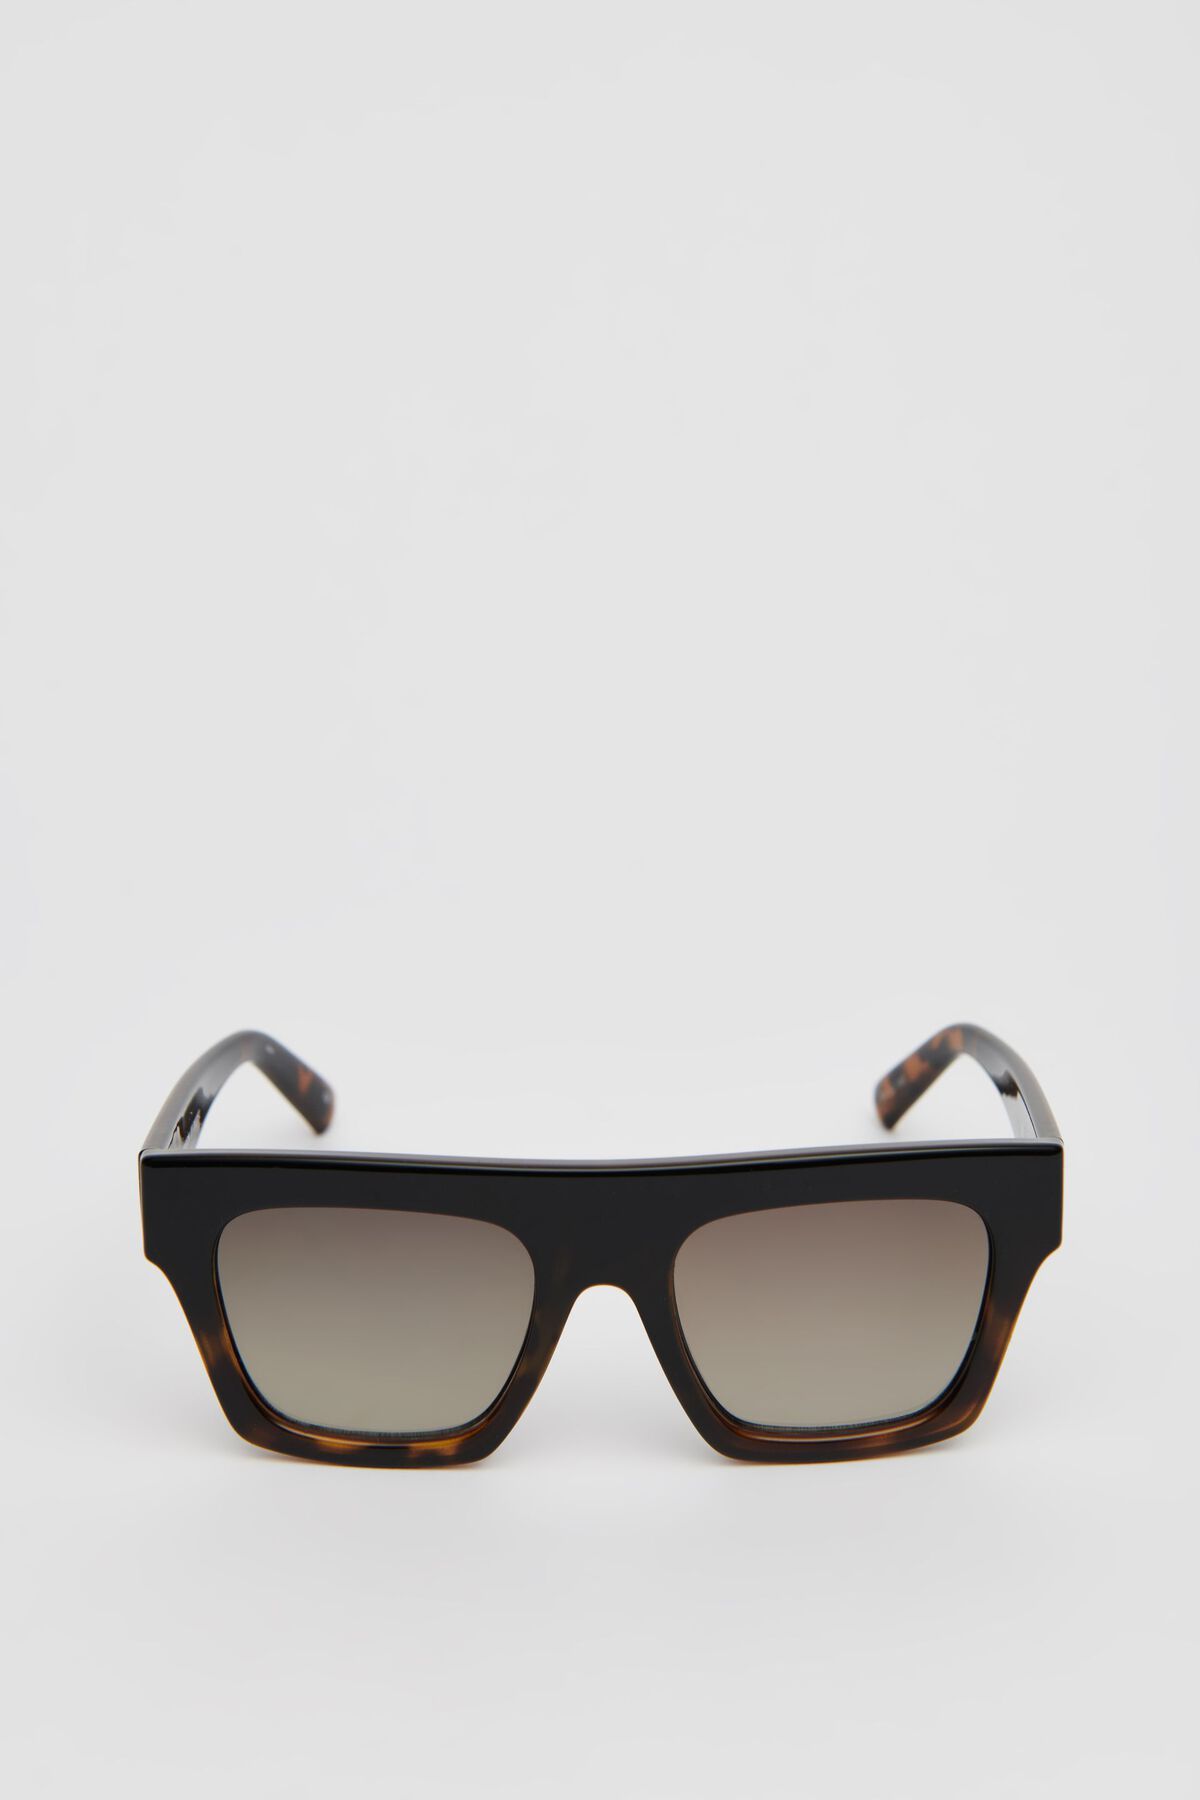 Dynamite LE SPECS | Subdimension Sunglasses. 2